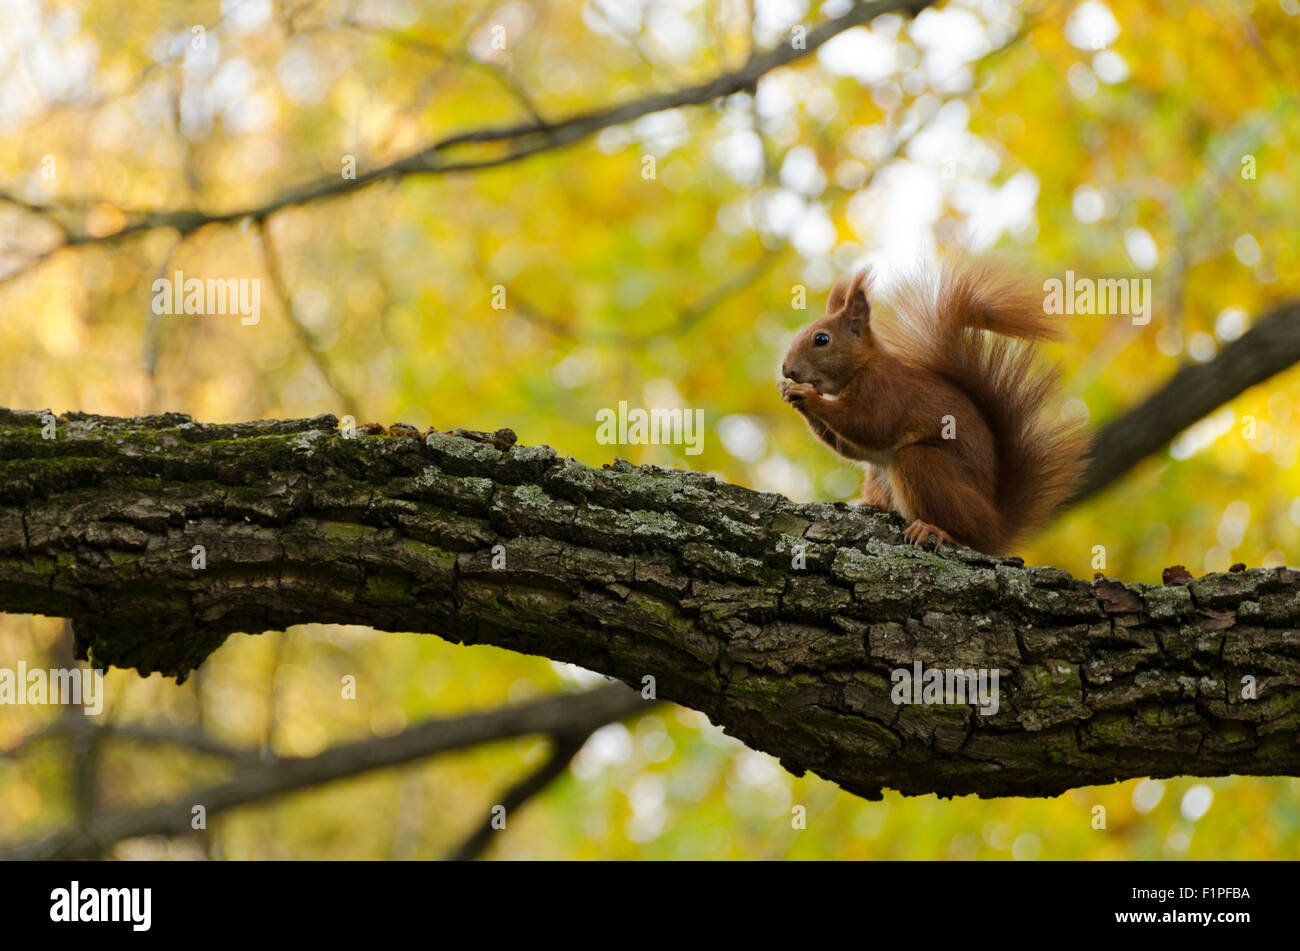 Eichhörnchen auf einem Ast Essen eine Nuss, close-up Stockfoto